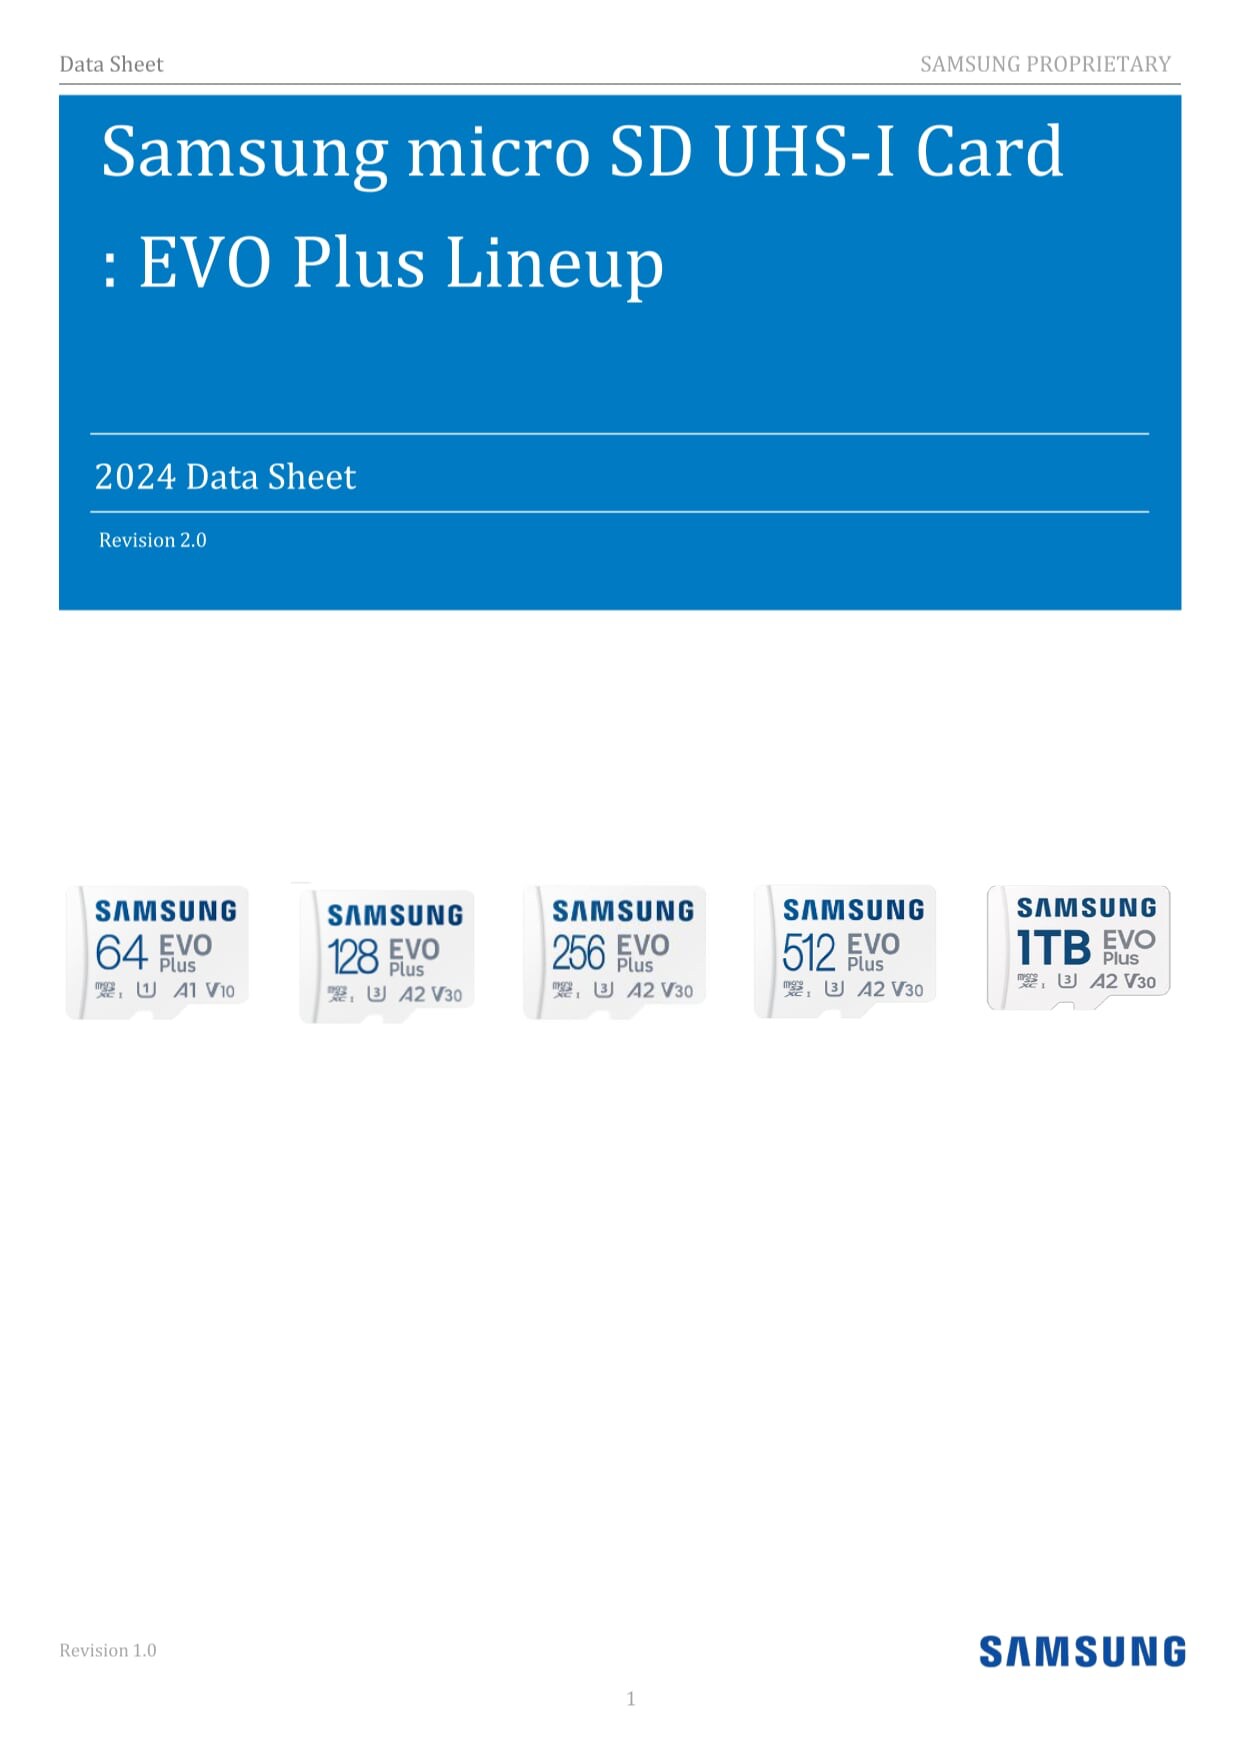 サムスン電子 EVO Plus microSDカード | サムスン半導体日本